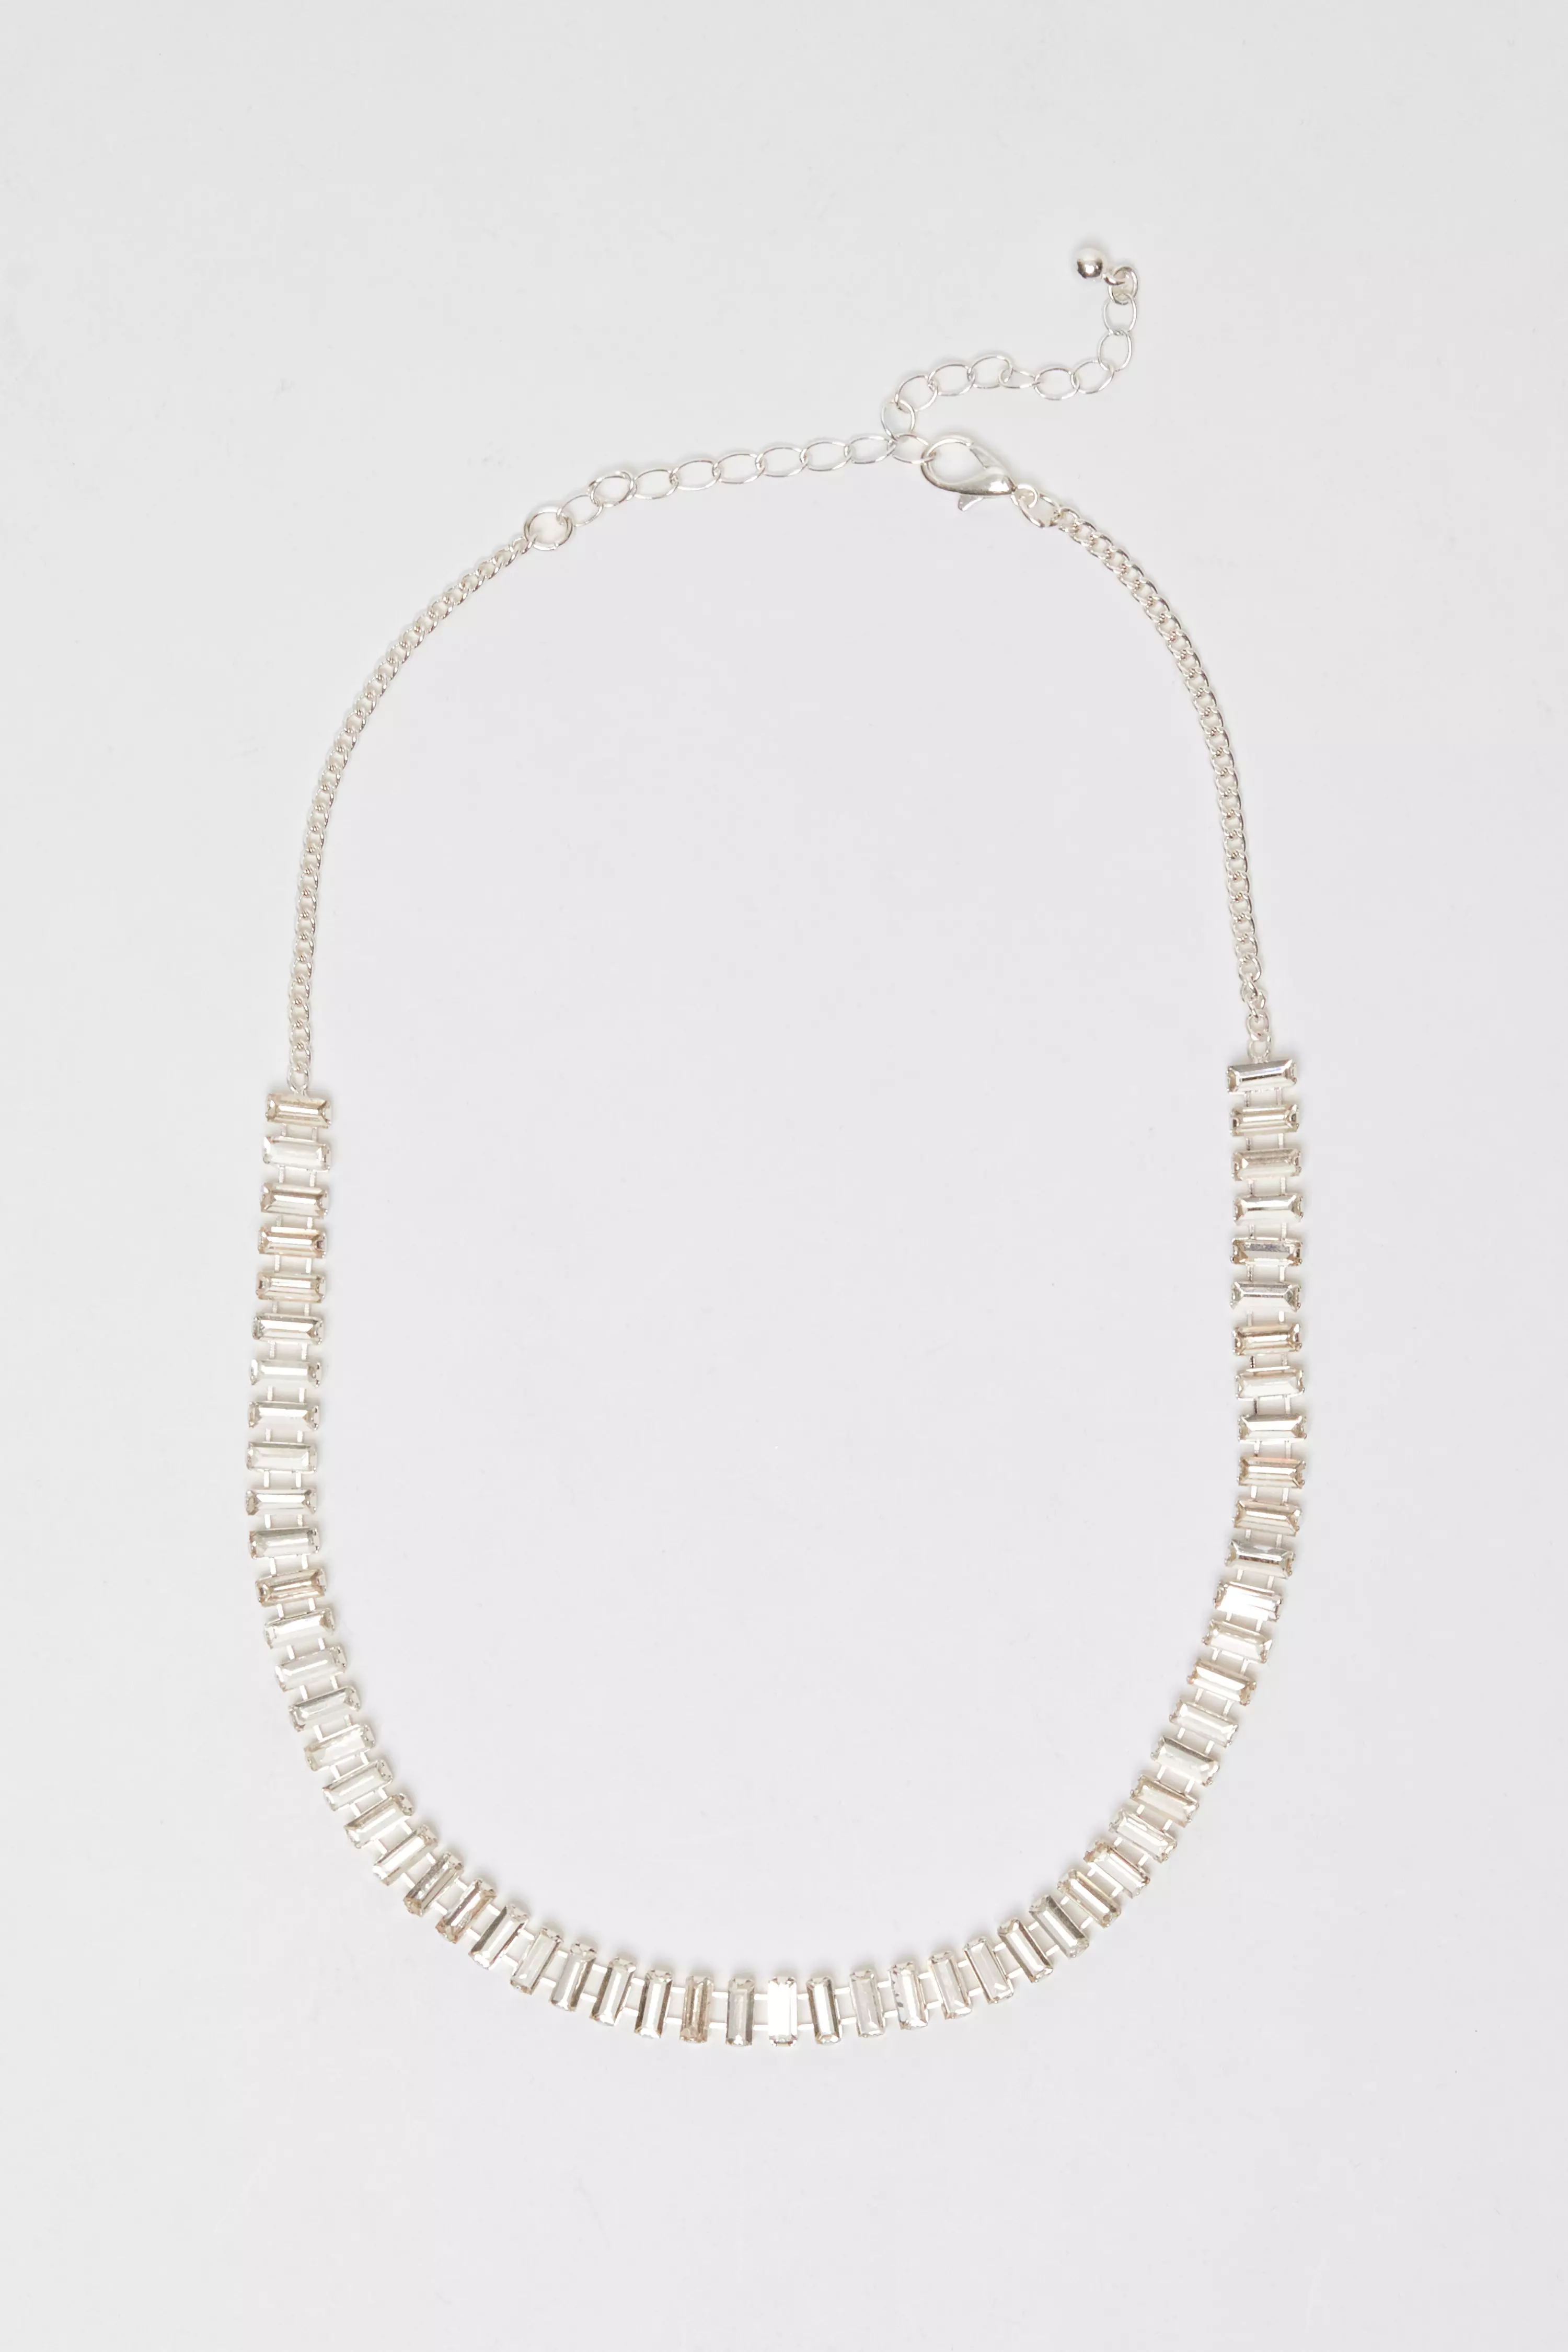 Silver Diamante Baguette Cut Necklace